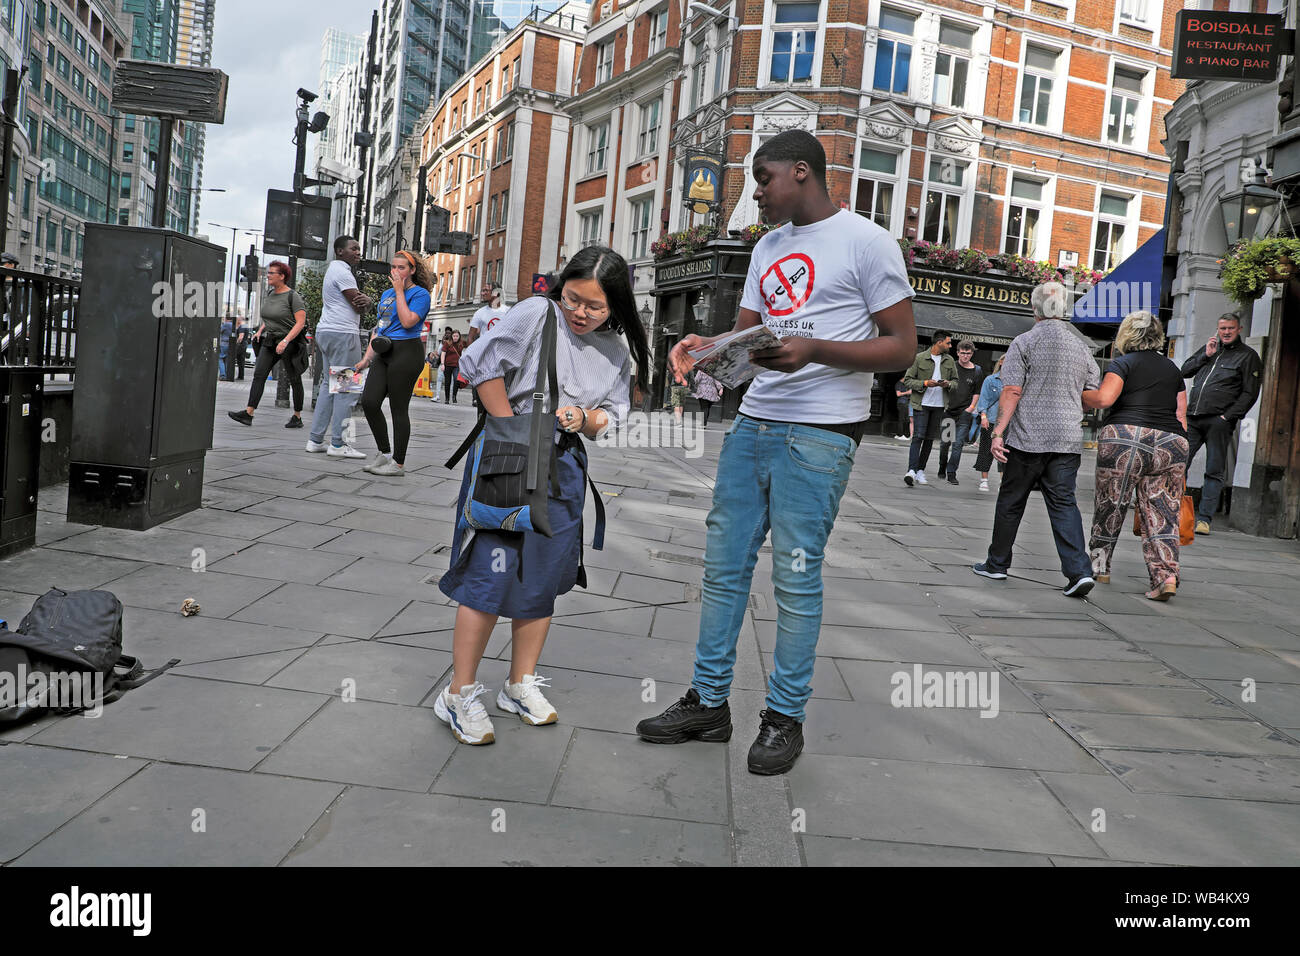 Mujer joven alcanzar para el monedero en el bolso para hacer donación a joven la recaudación de fondos para la educación en la calle Liverpool Londres England Reino Unido. Kathy DEWITT Foto de stock